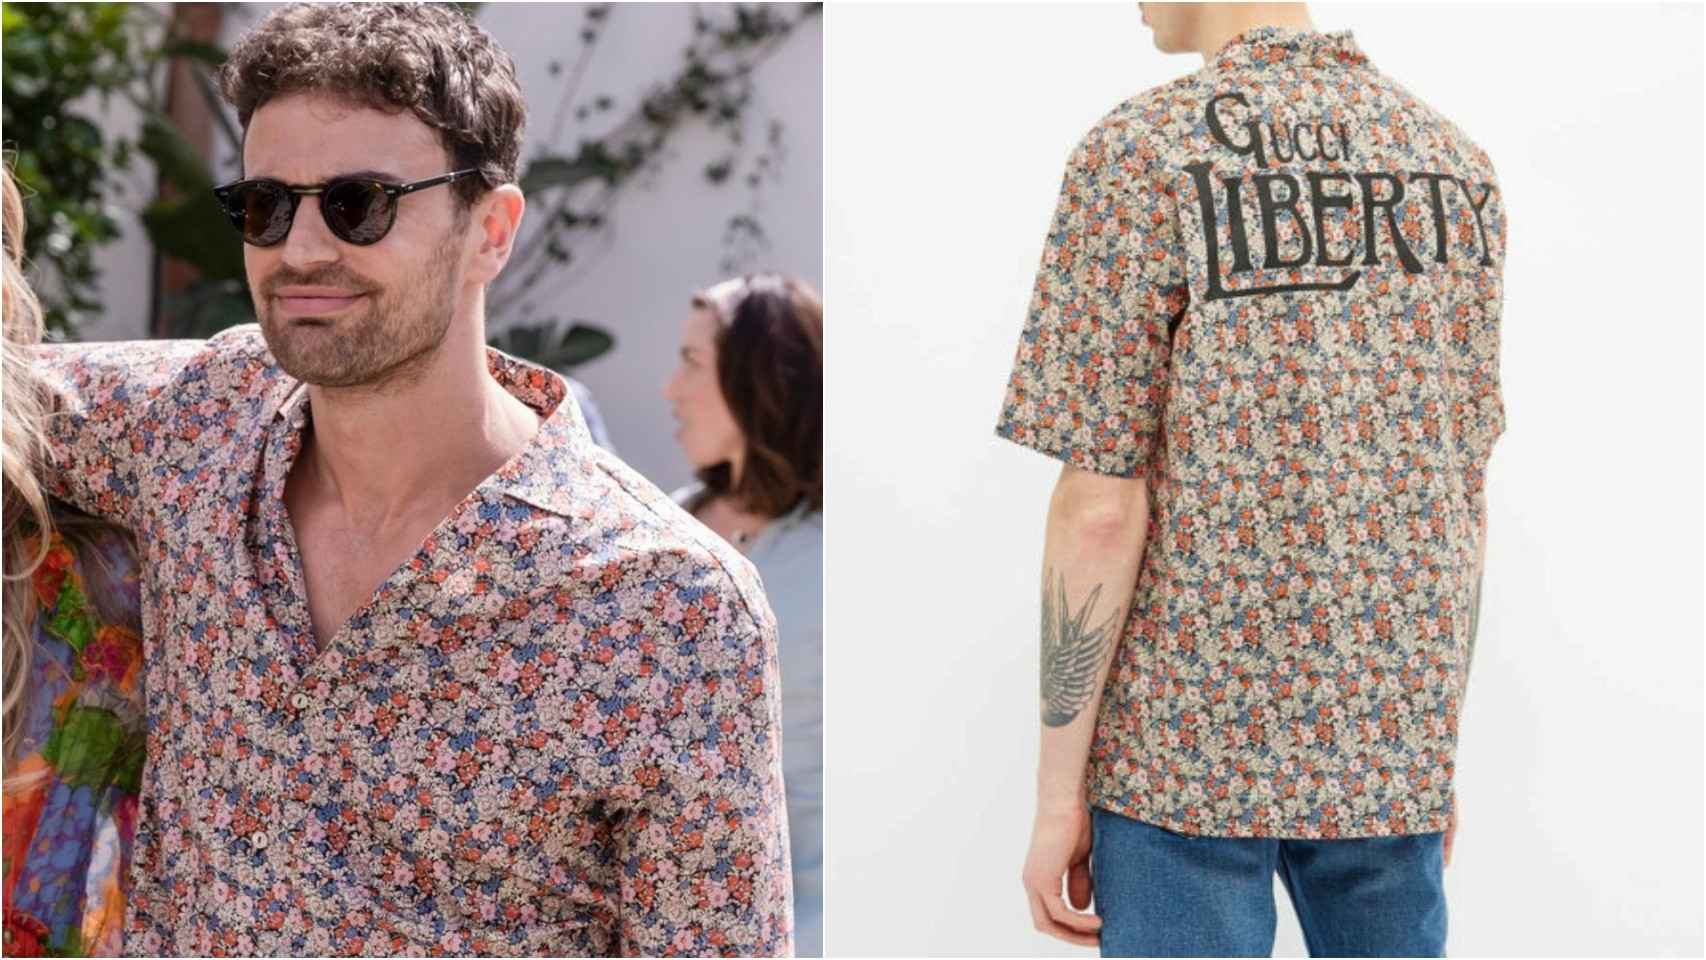 El actor Theo James (Cameron Sullivan) luce camisa estampada de Gucci en colaboración con Liberty.